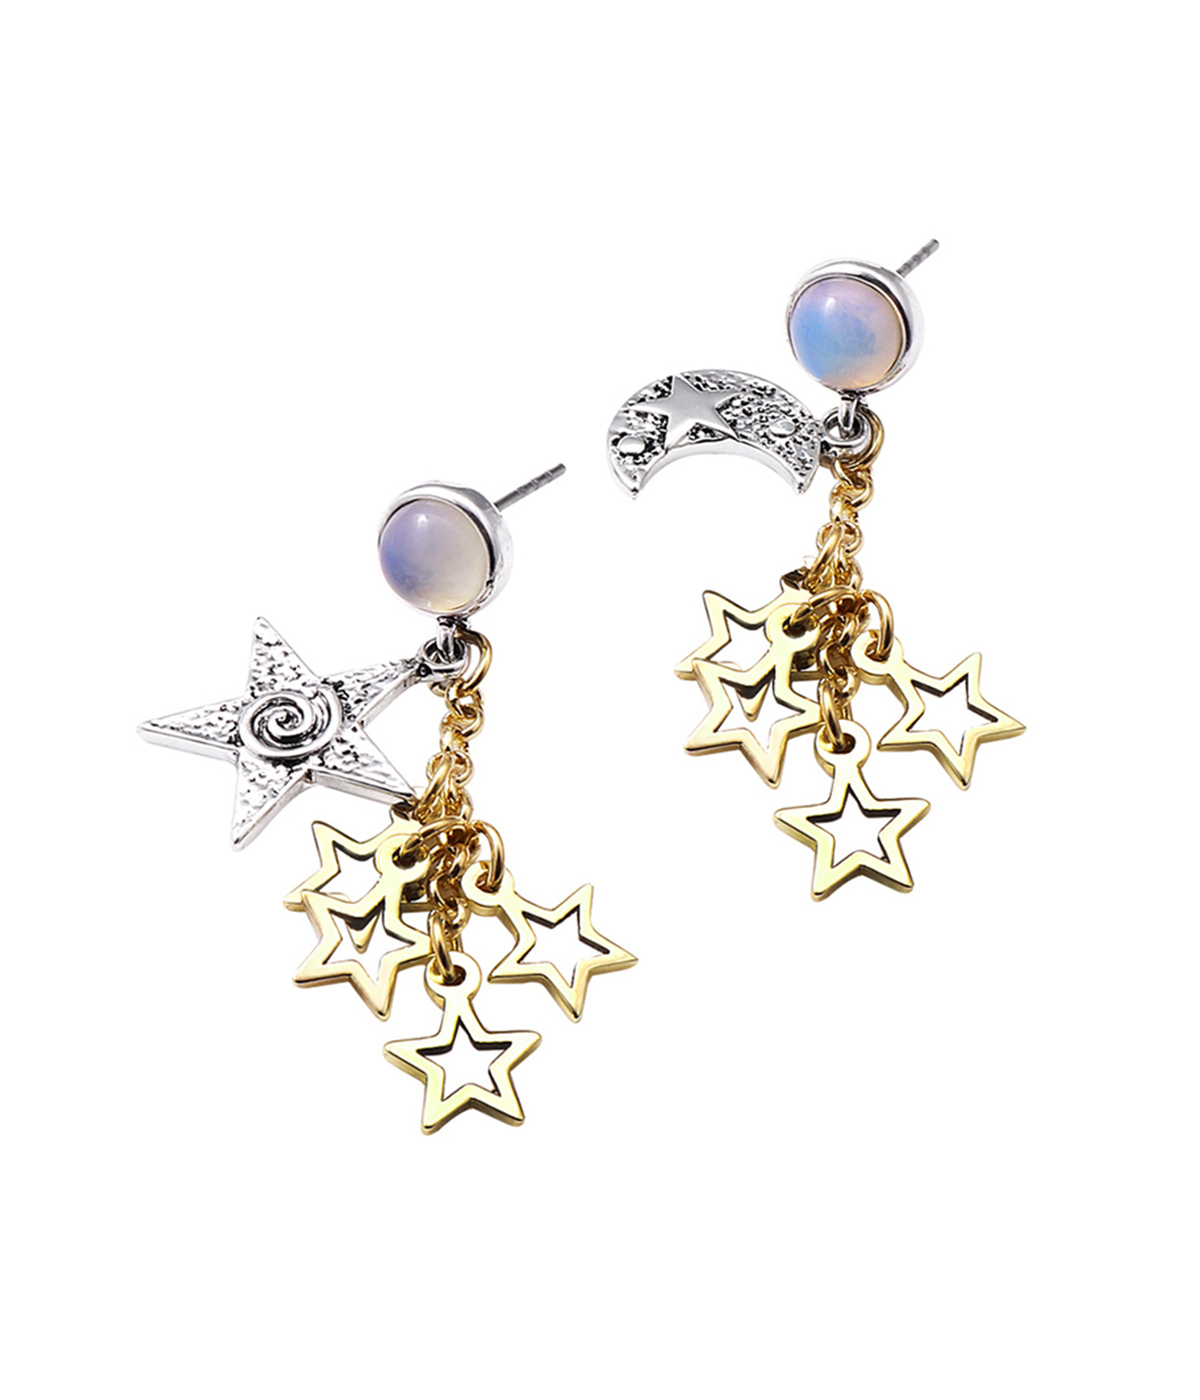 Luna wooden earrings  Swiss wooden jewelry